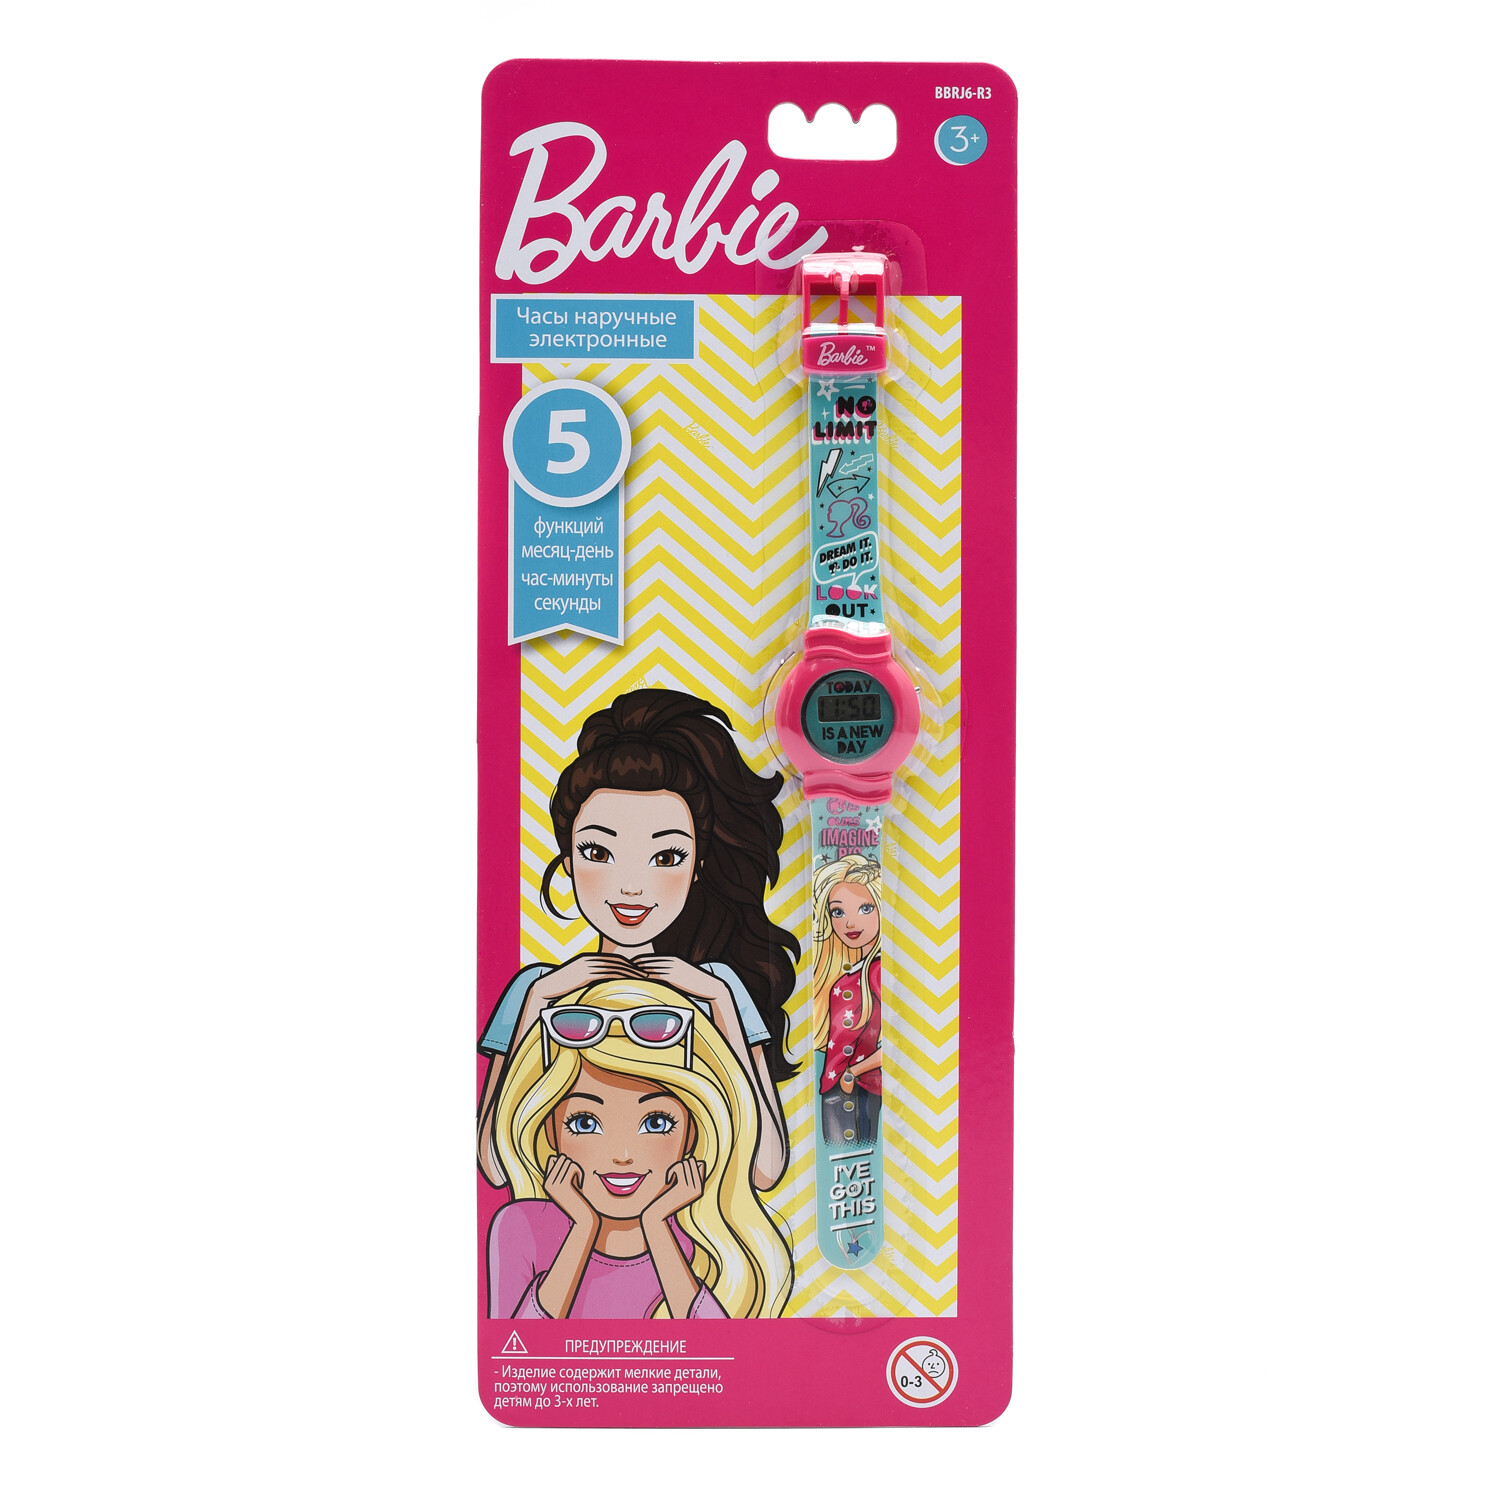 Часы наручные Barbie электронные, розовый, бирюзовый BBRJ6-R3 часы наручные barbie электронные розовый бирюзовый bbrj6 r3